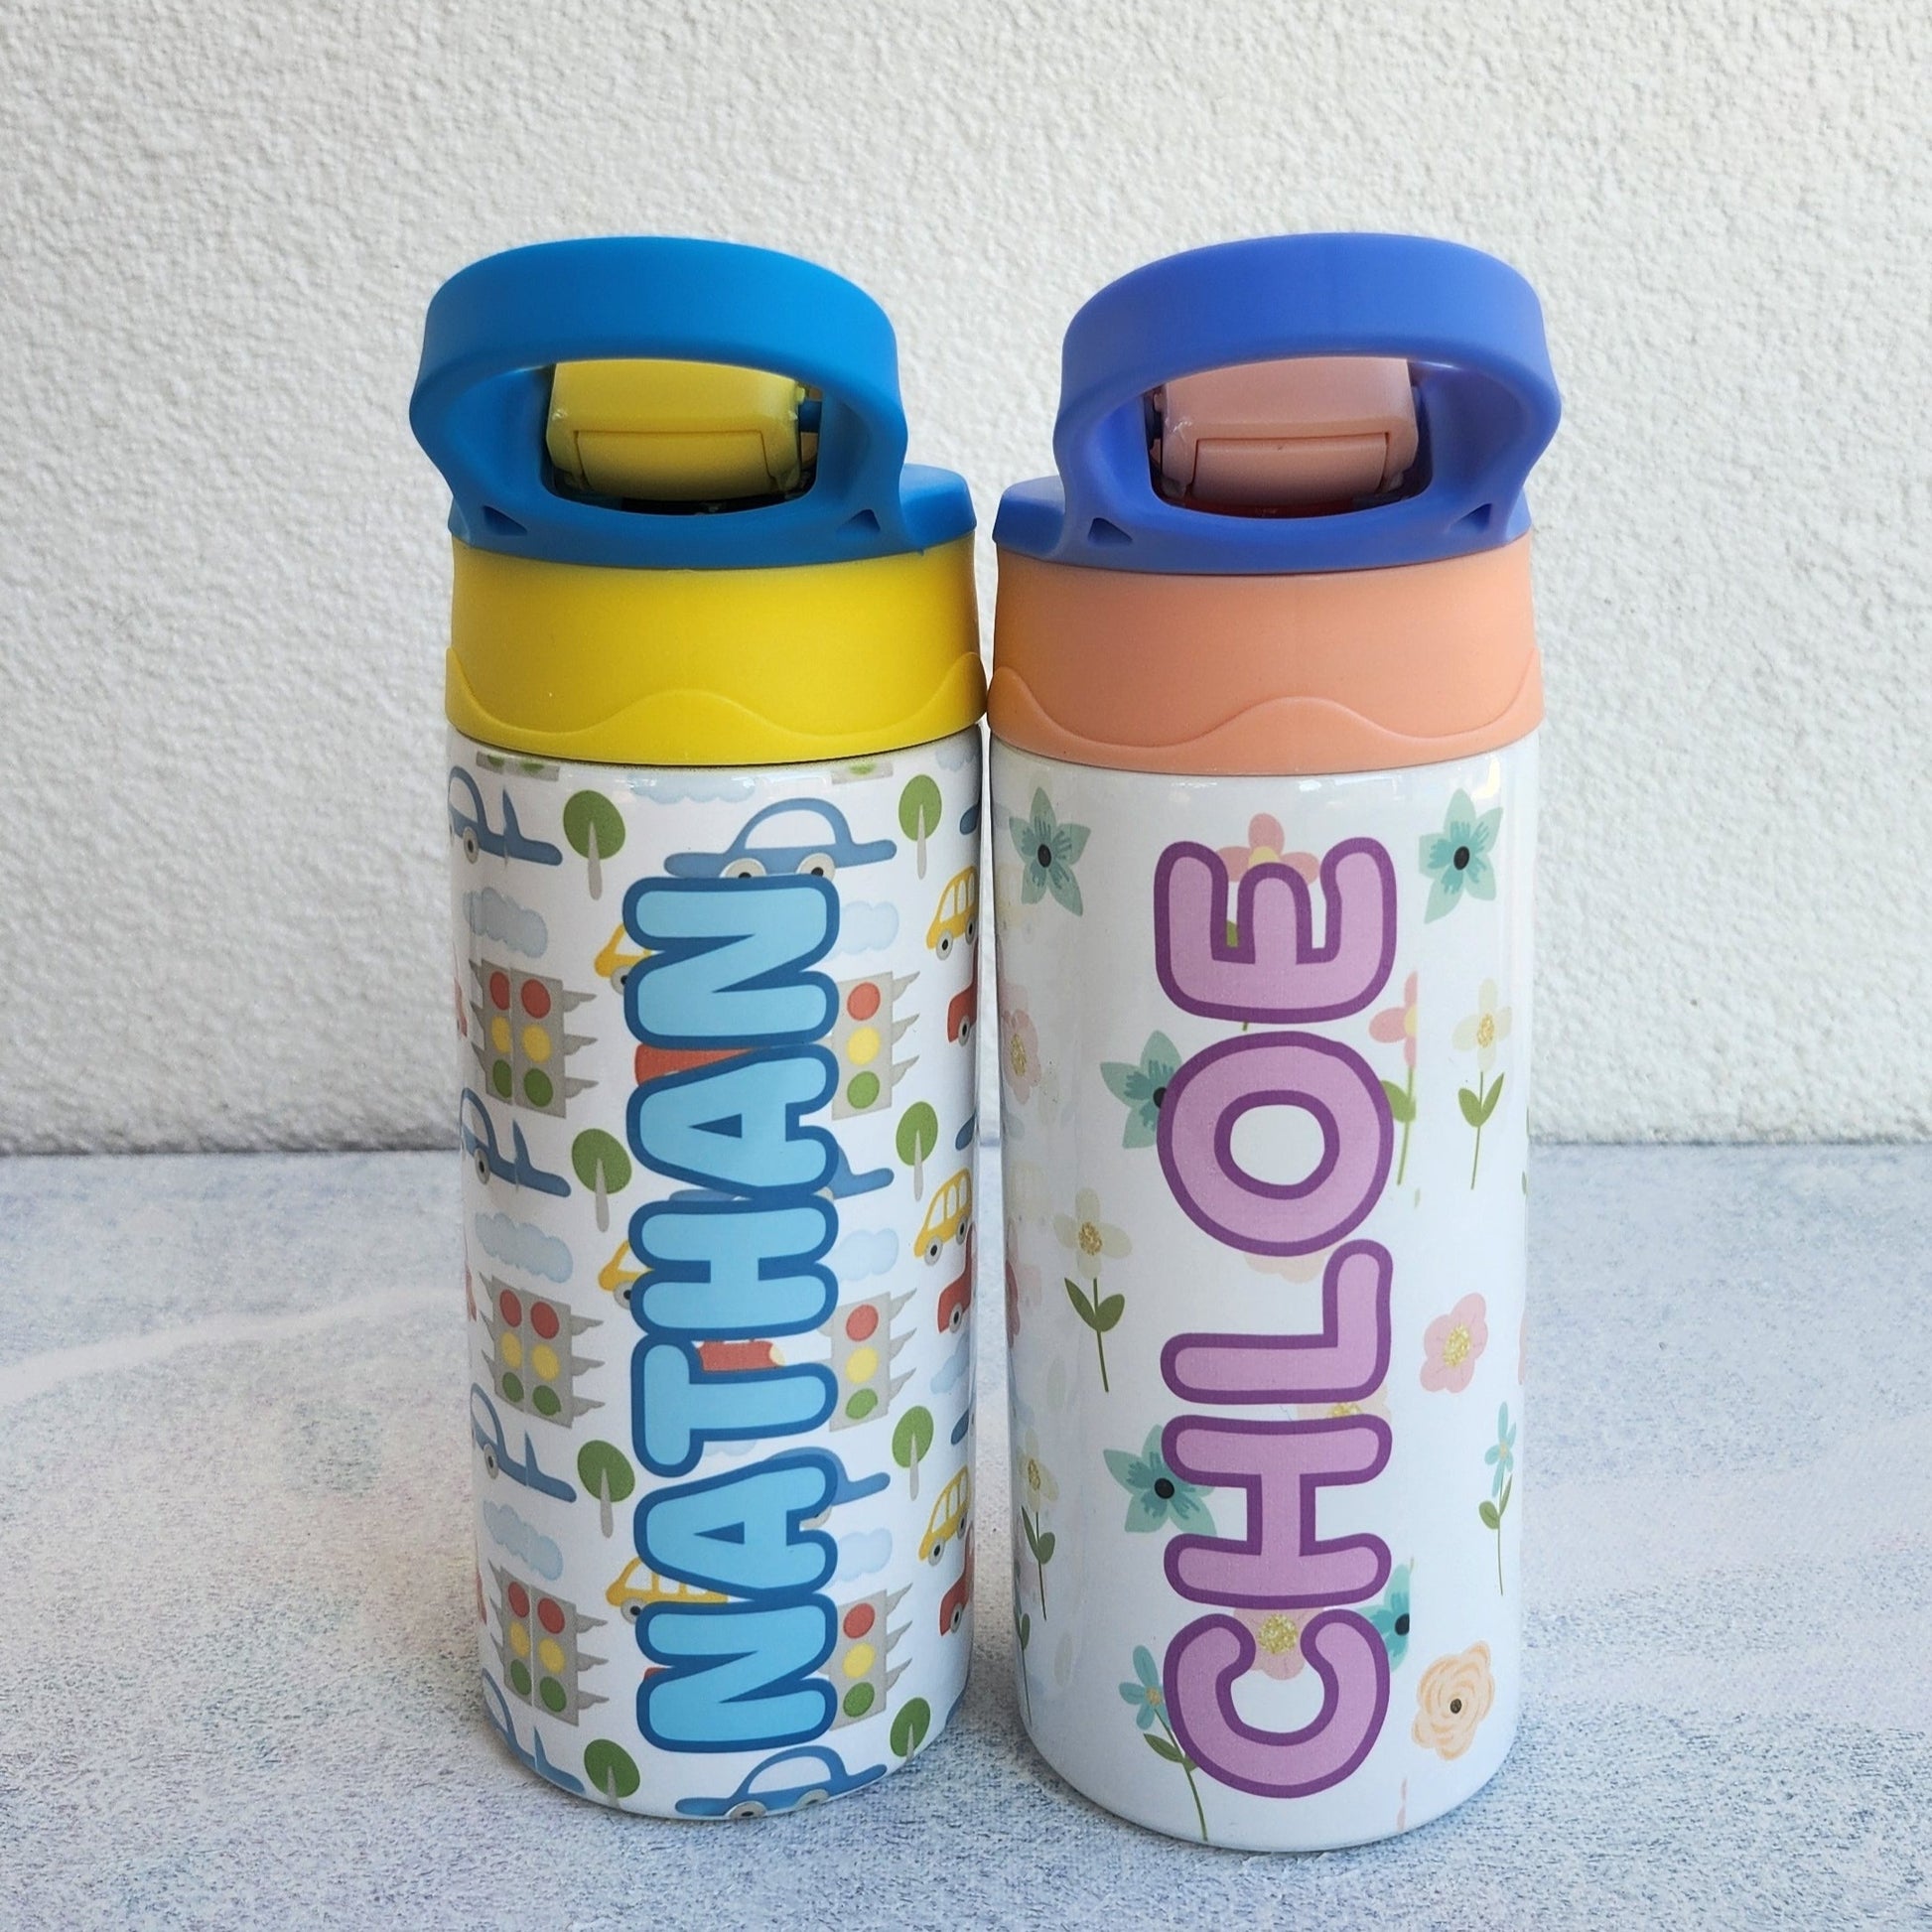 Personalised water bottles